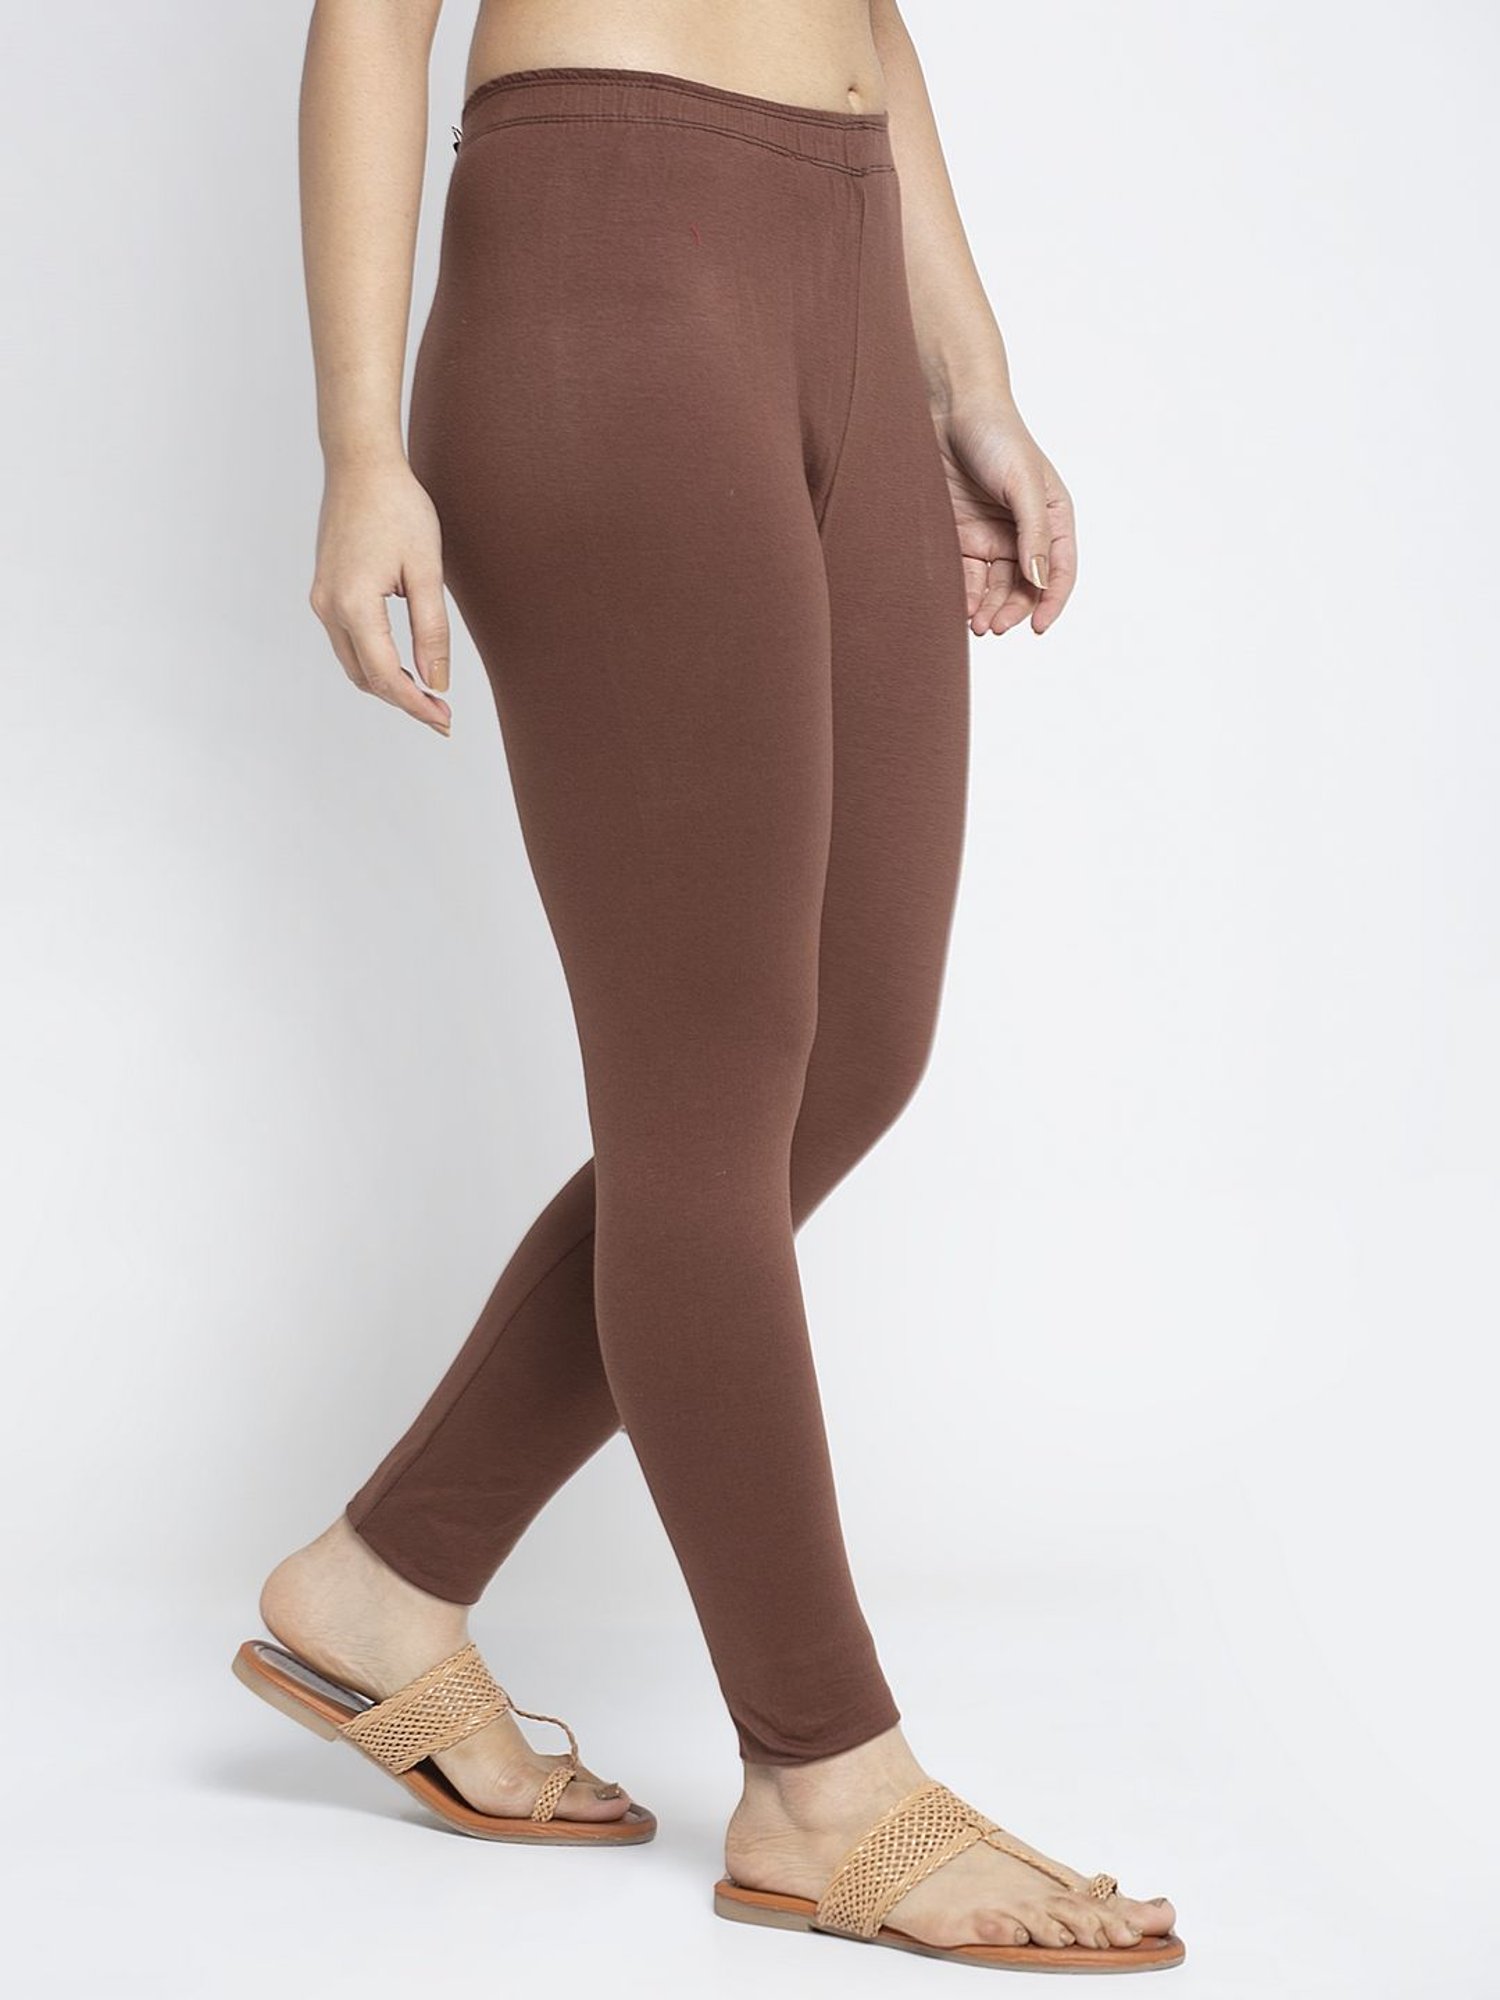 Buy Gracit Brown Regular Fit Leggings for Women¿s Online @ Tata CLiQ